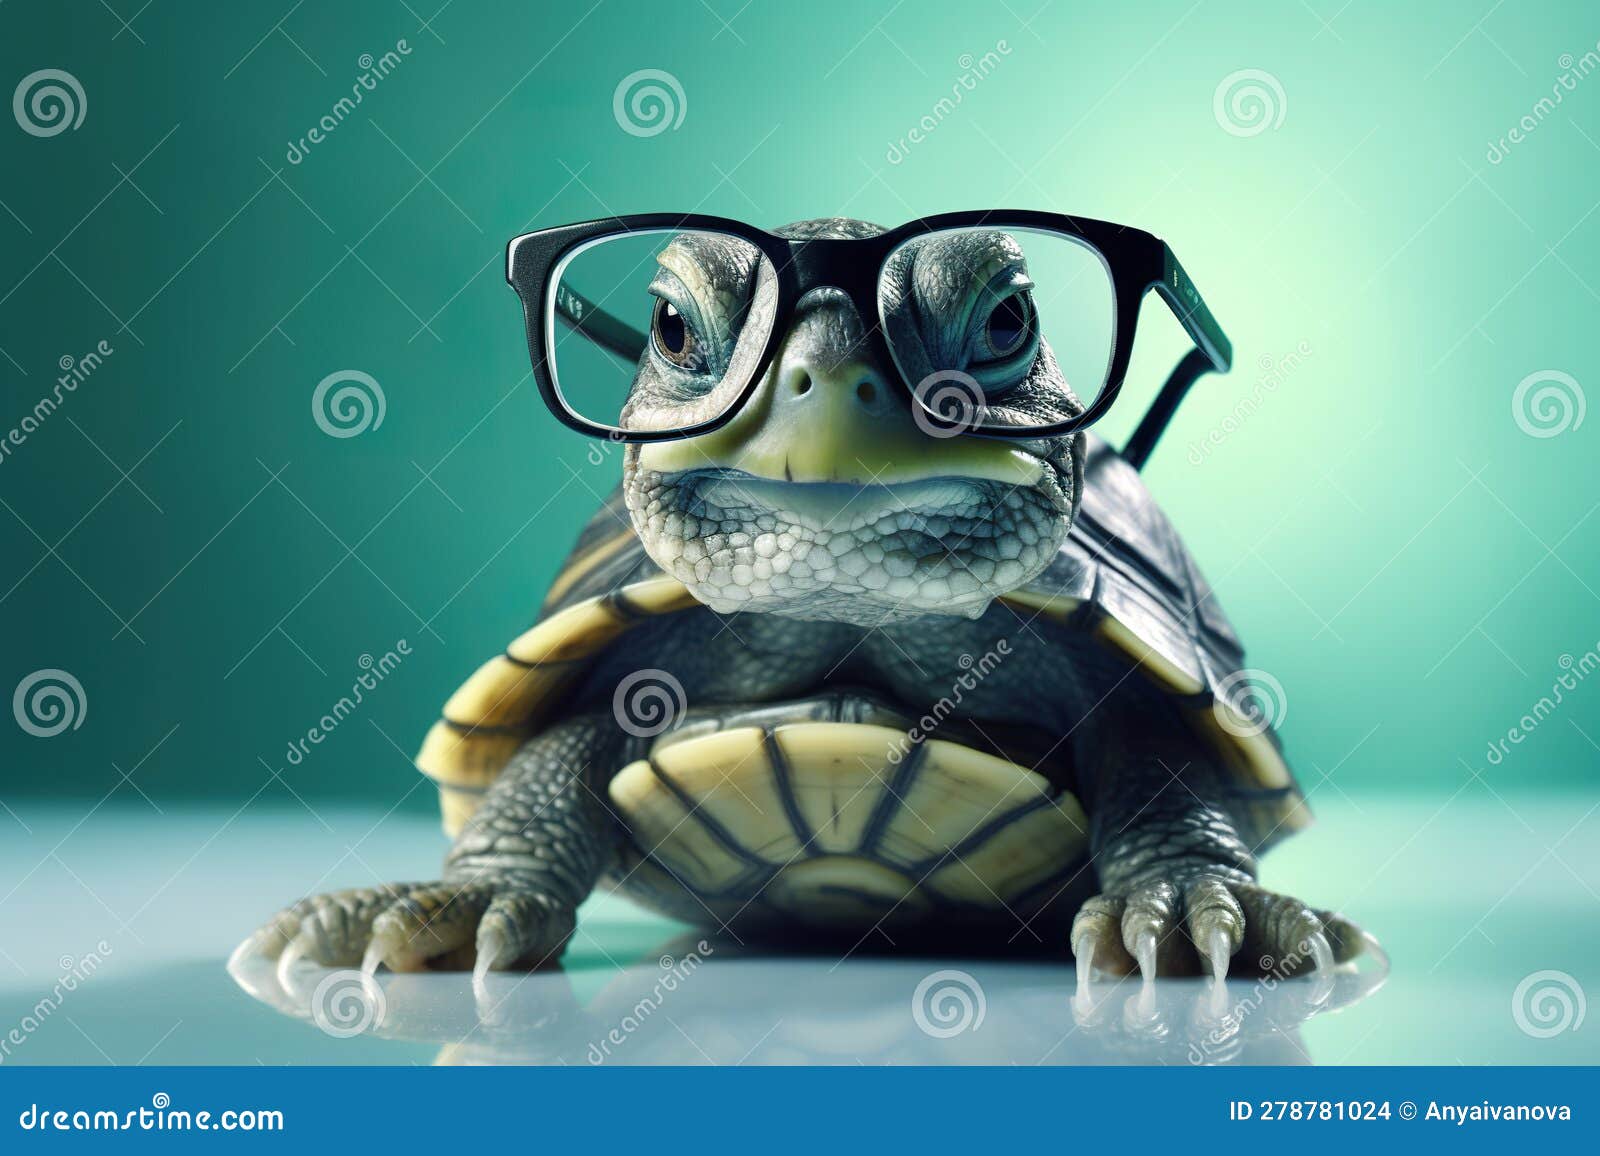 Una Tartaruga Che Porta Occhiali Seduti Sopra Un Tavolo. Immagine